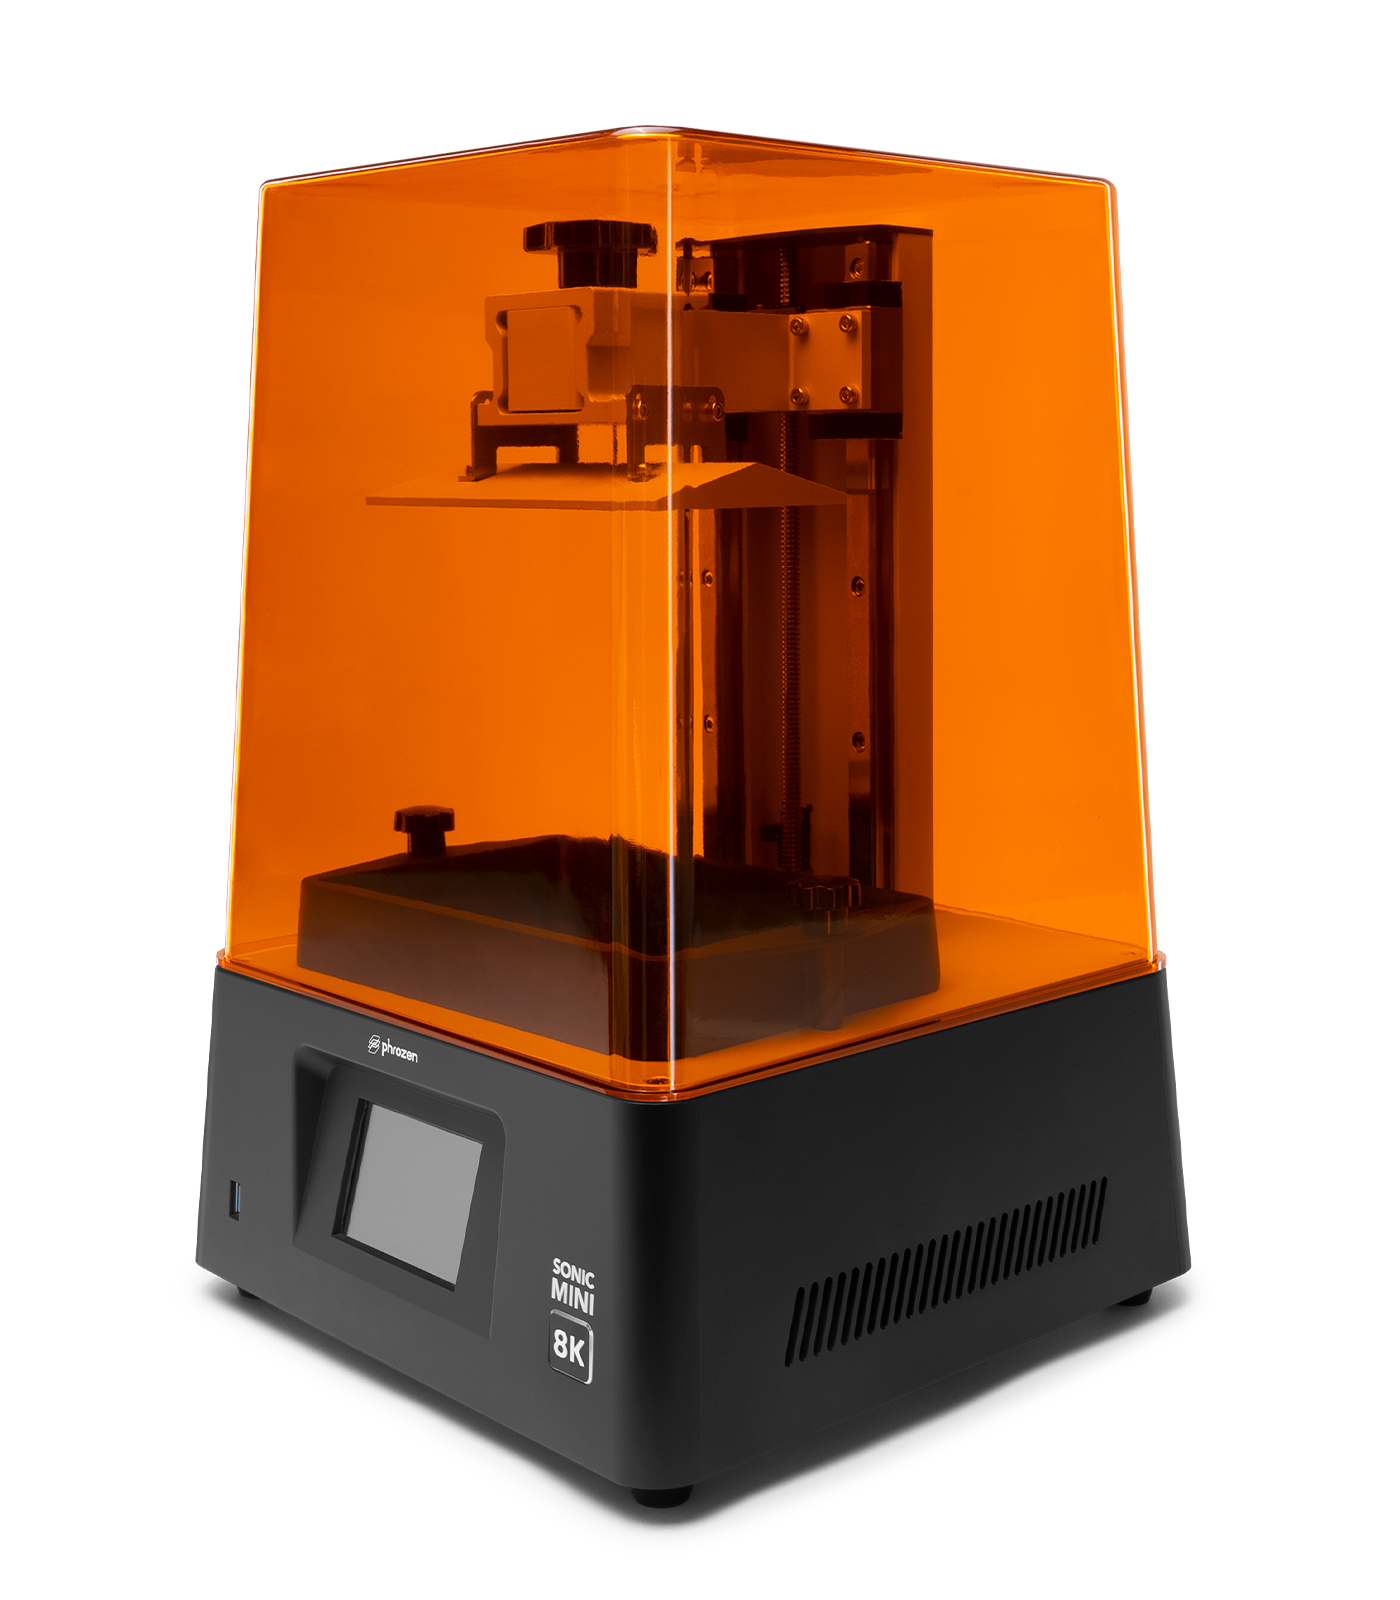 Phrozen Sonic Mini Resin 8K 3D Printer | Phrozen Technology: Resin 